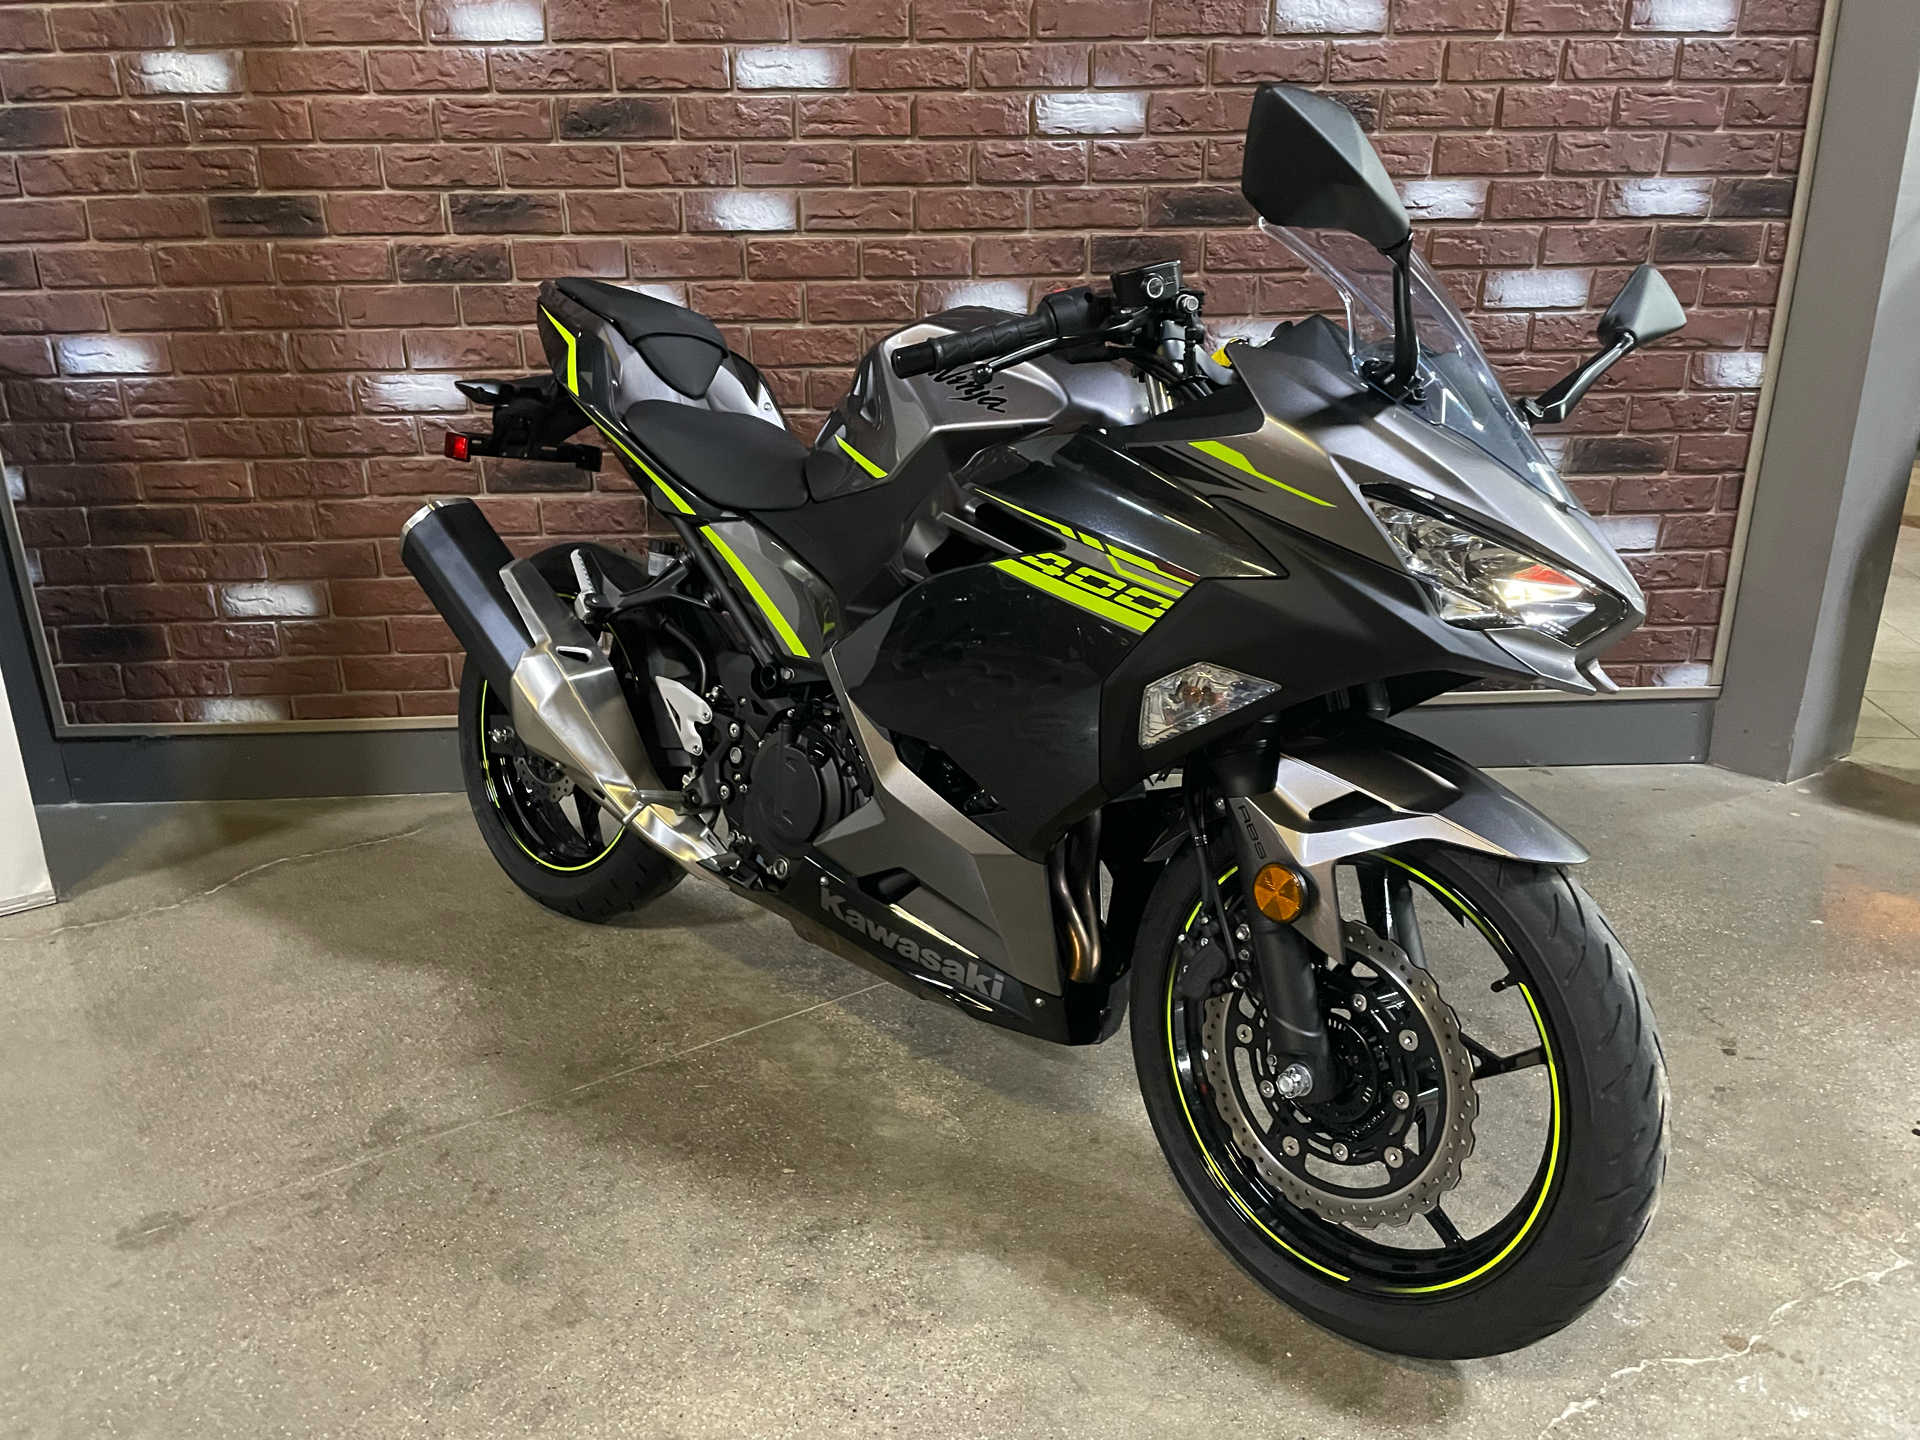 2021 Kawasaki Ninja 400 ABS in Dimondale, Michigan - Photo 2